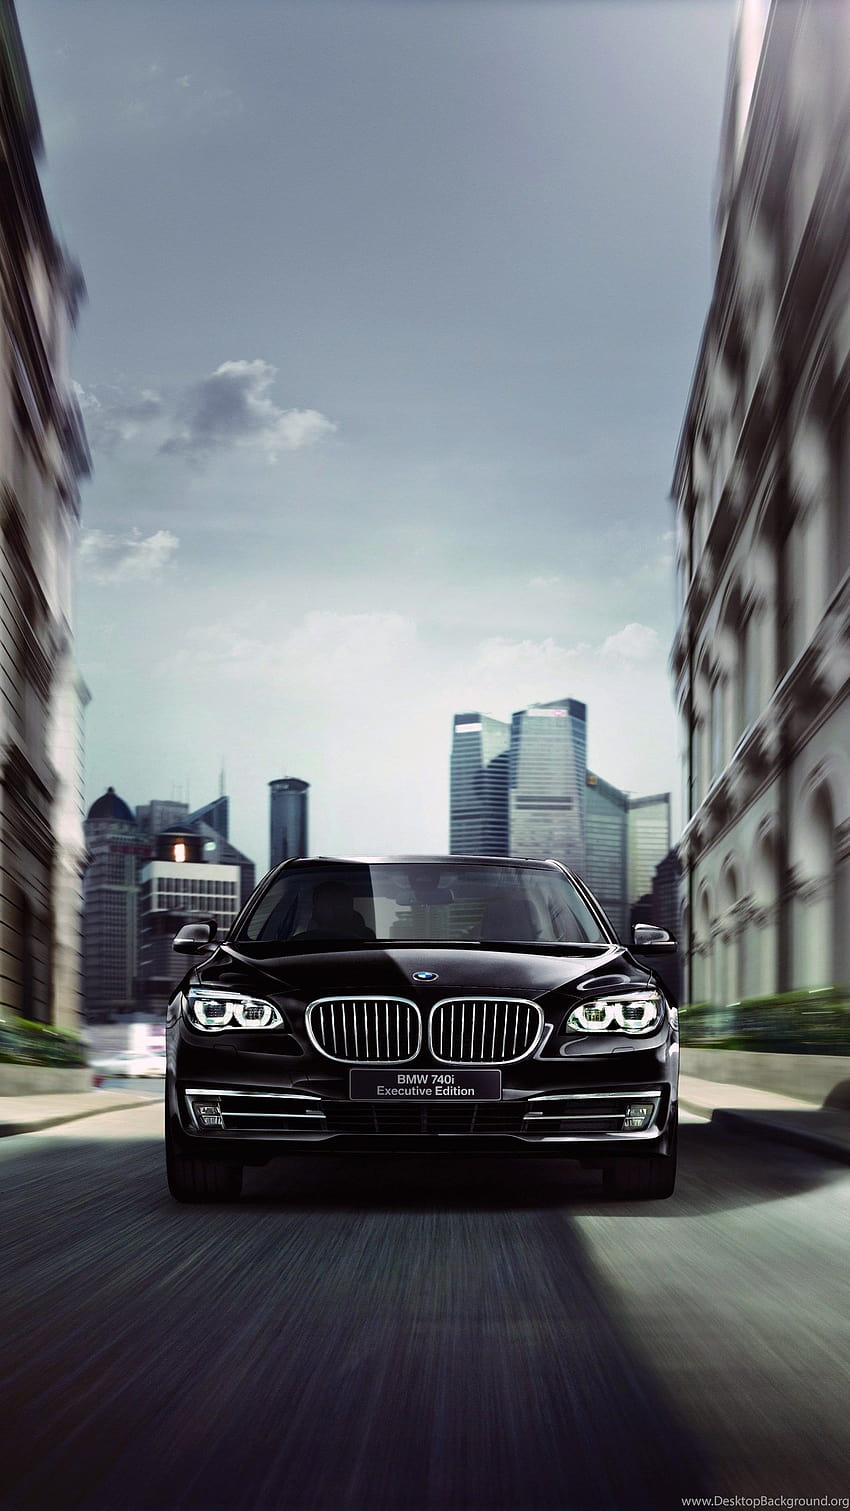 2014 BMW 740i Executive F01 Luxushintergründe, bmw f01 HD-Handy-Hintergrundbild